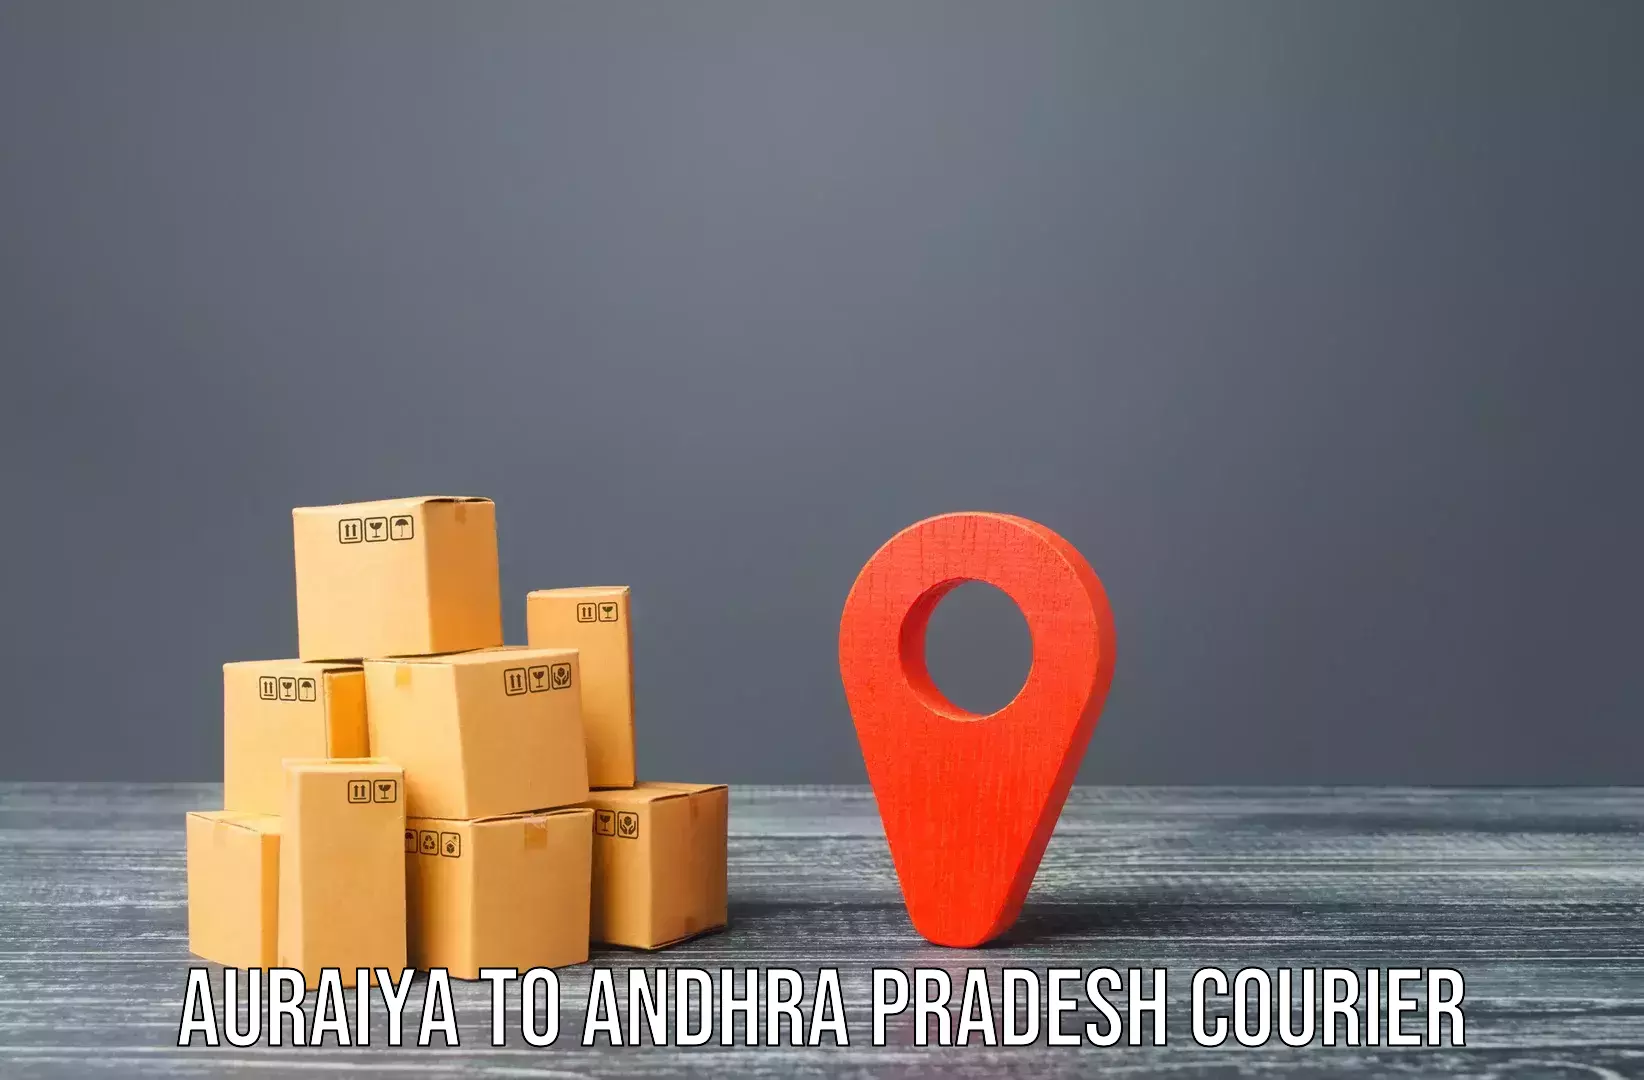 Moving and packing experts Auraiya to Koduru